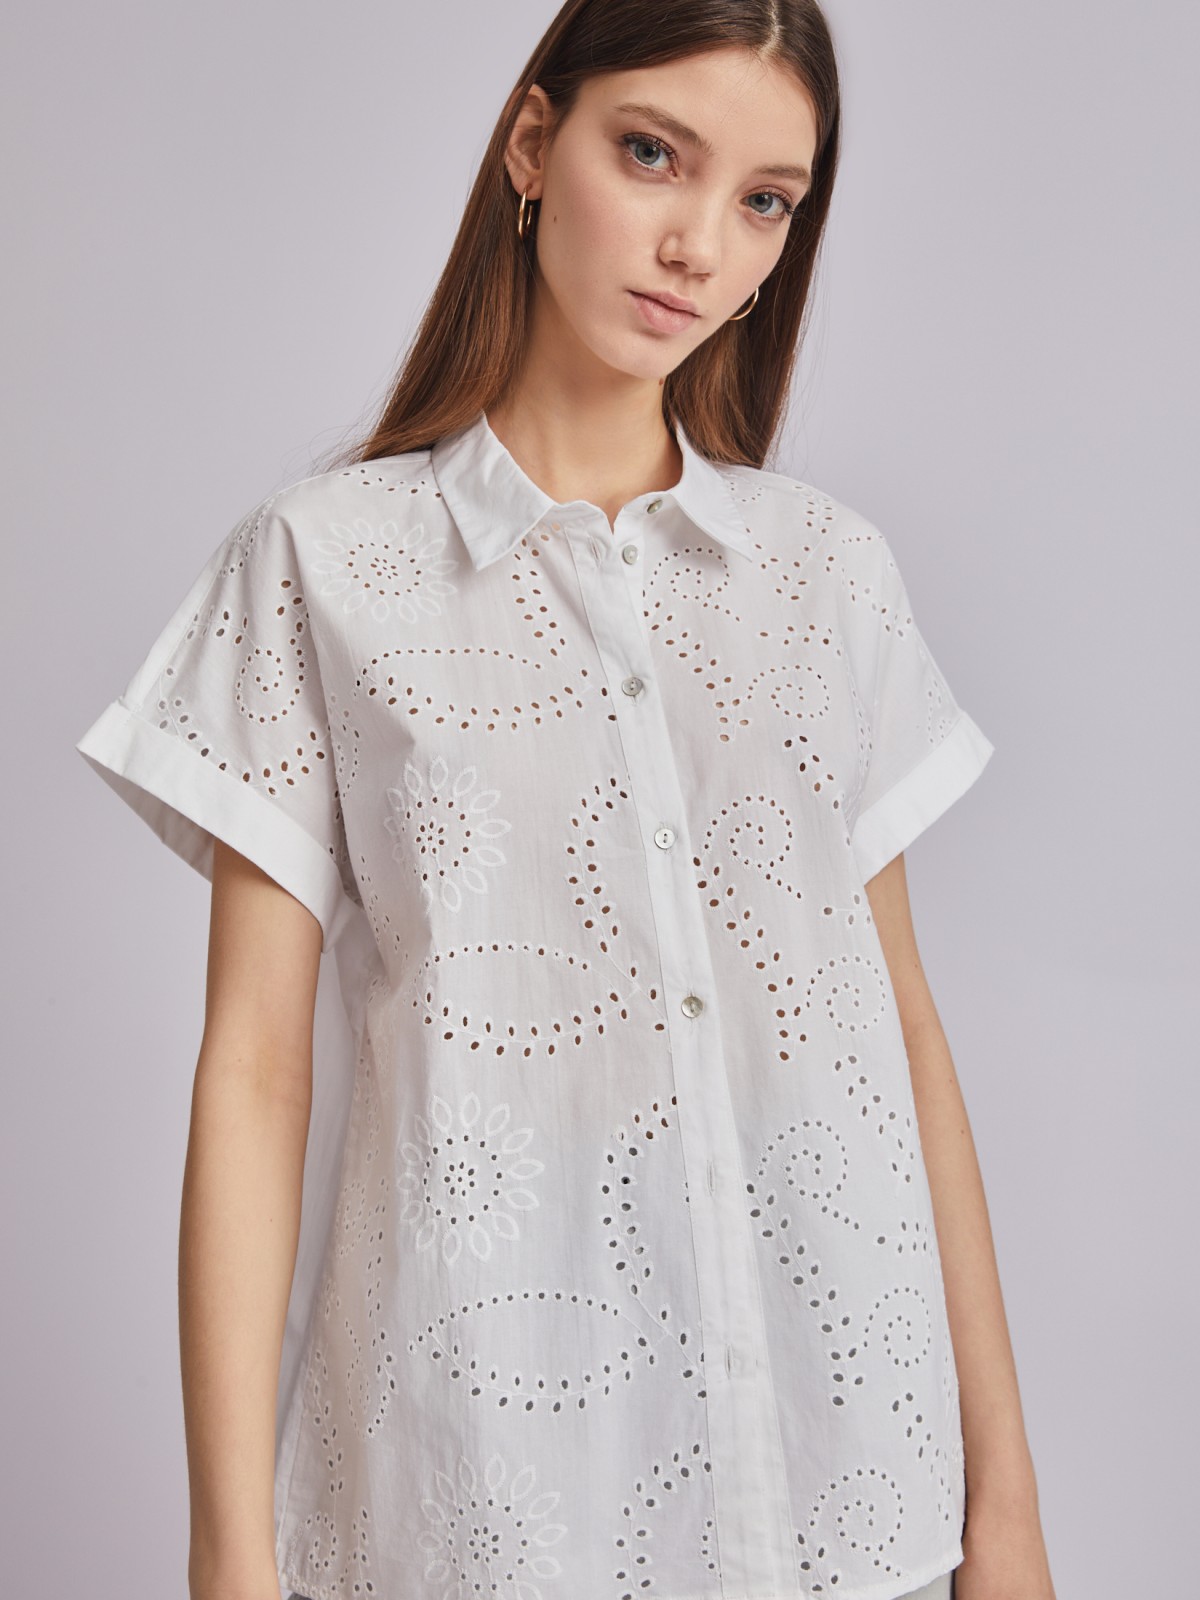 Рубашка из хлопка с коротким рукавом и ажурной вышивкой zolla 023251259023, цвет белый, размер XS - фото 5